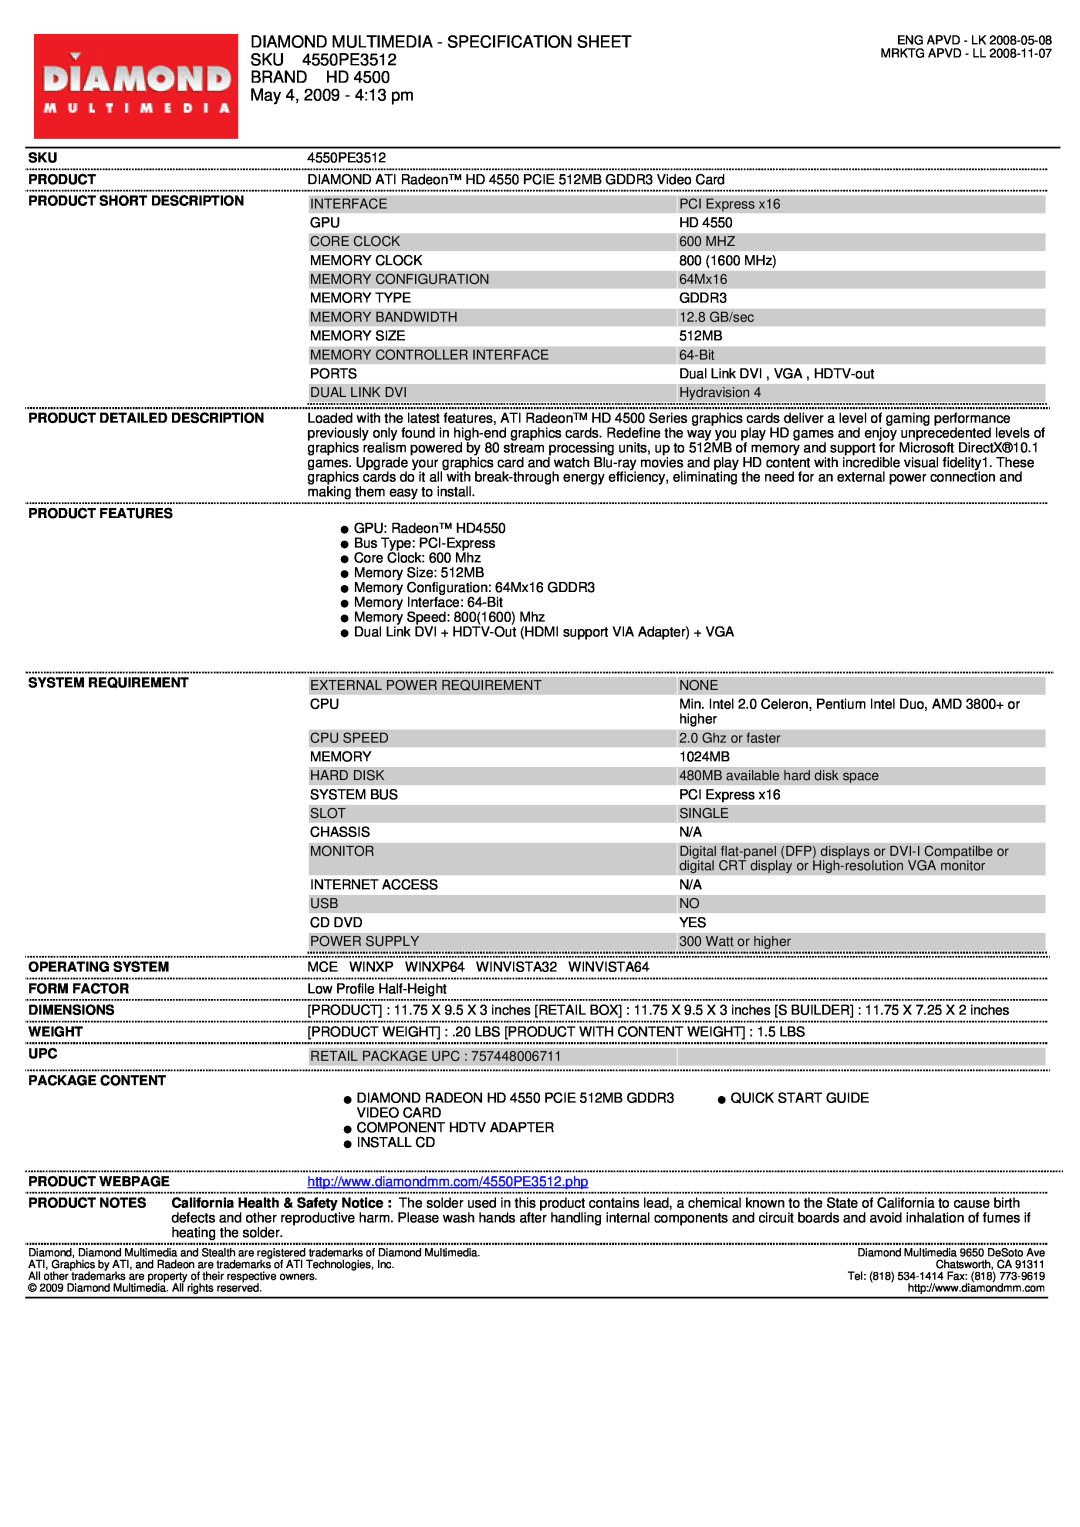 Diamond Multimedia SKU 4550PE3512 specifications Diamond Multimedia - Specification Sheet, Brand Hd, May 4, 2009 - 413 pm 